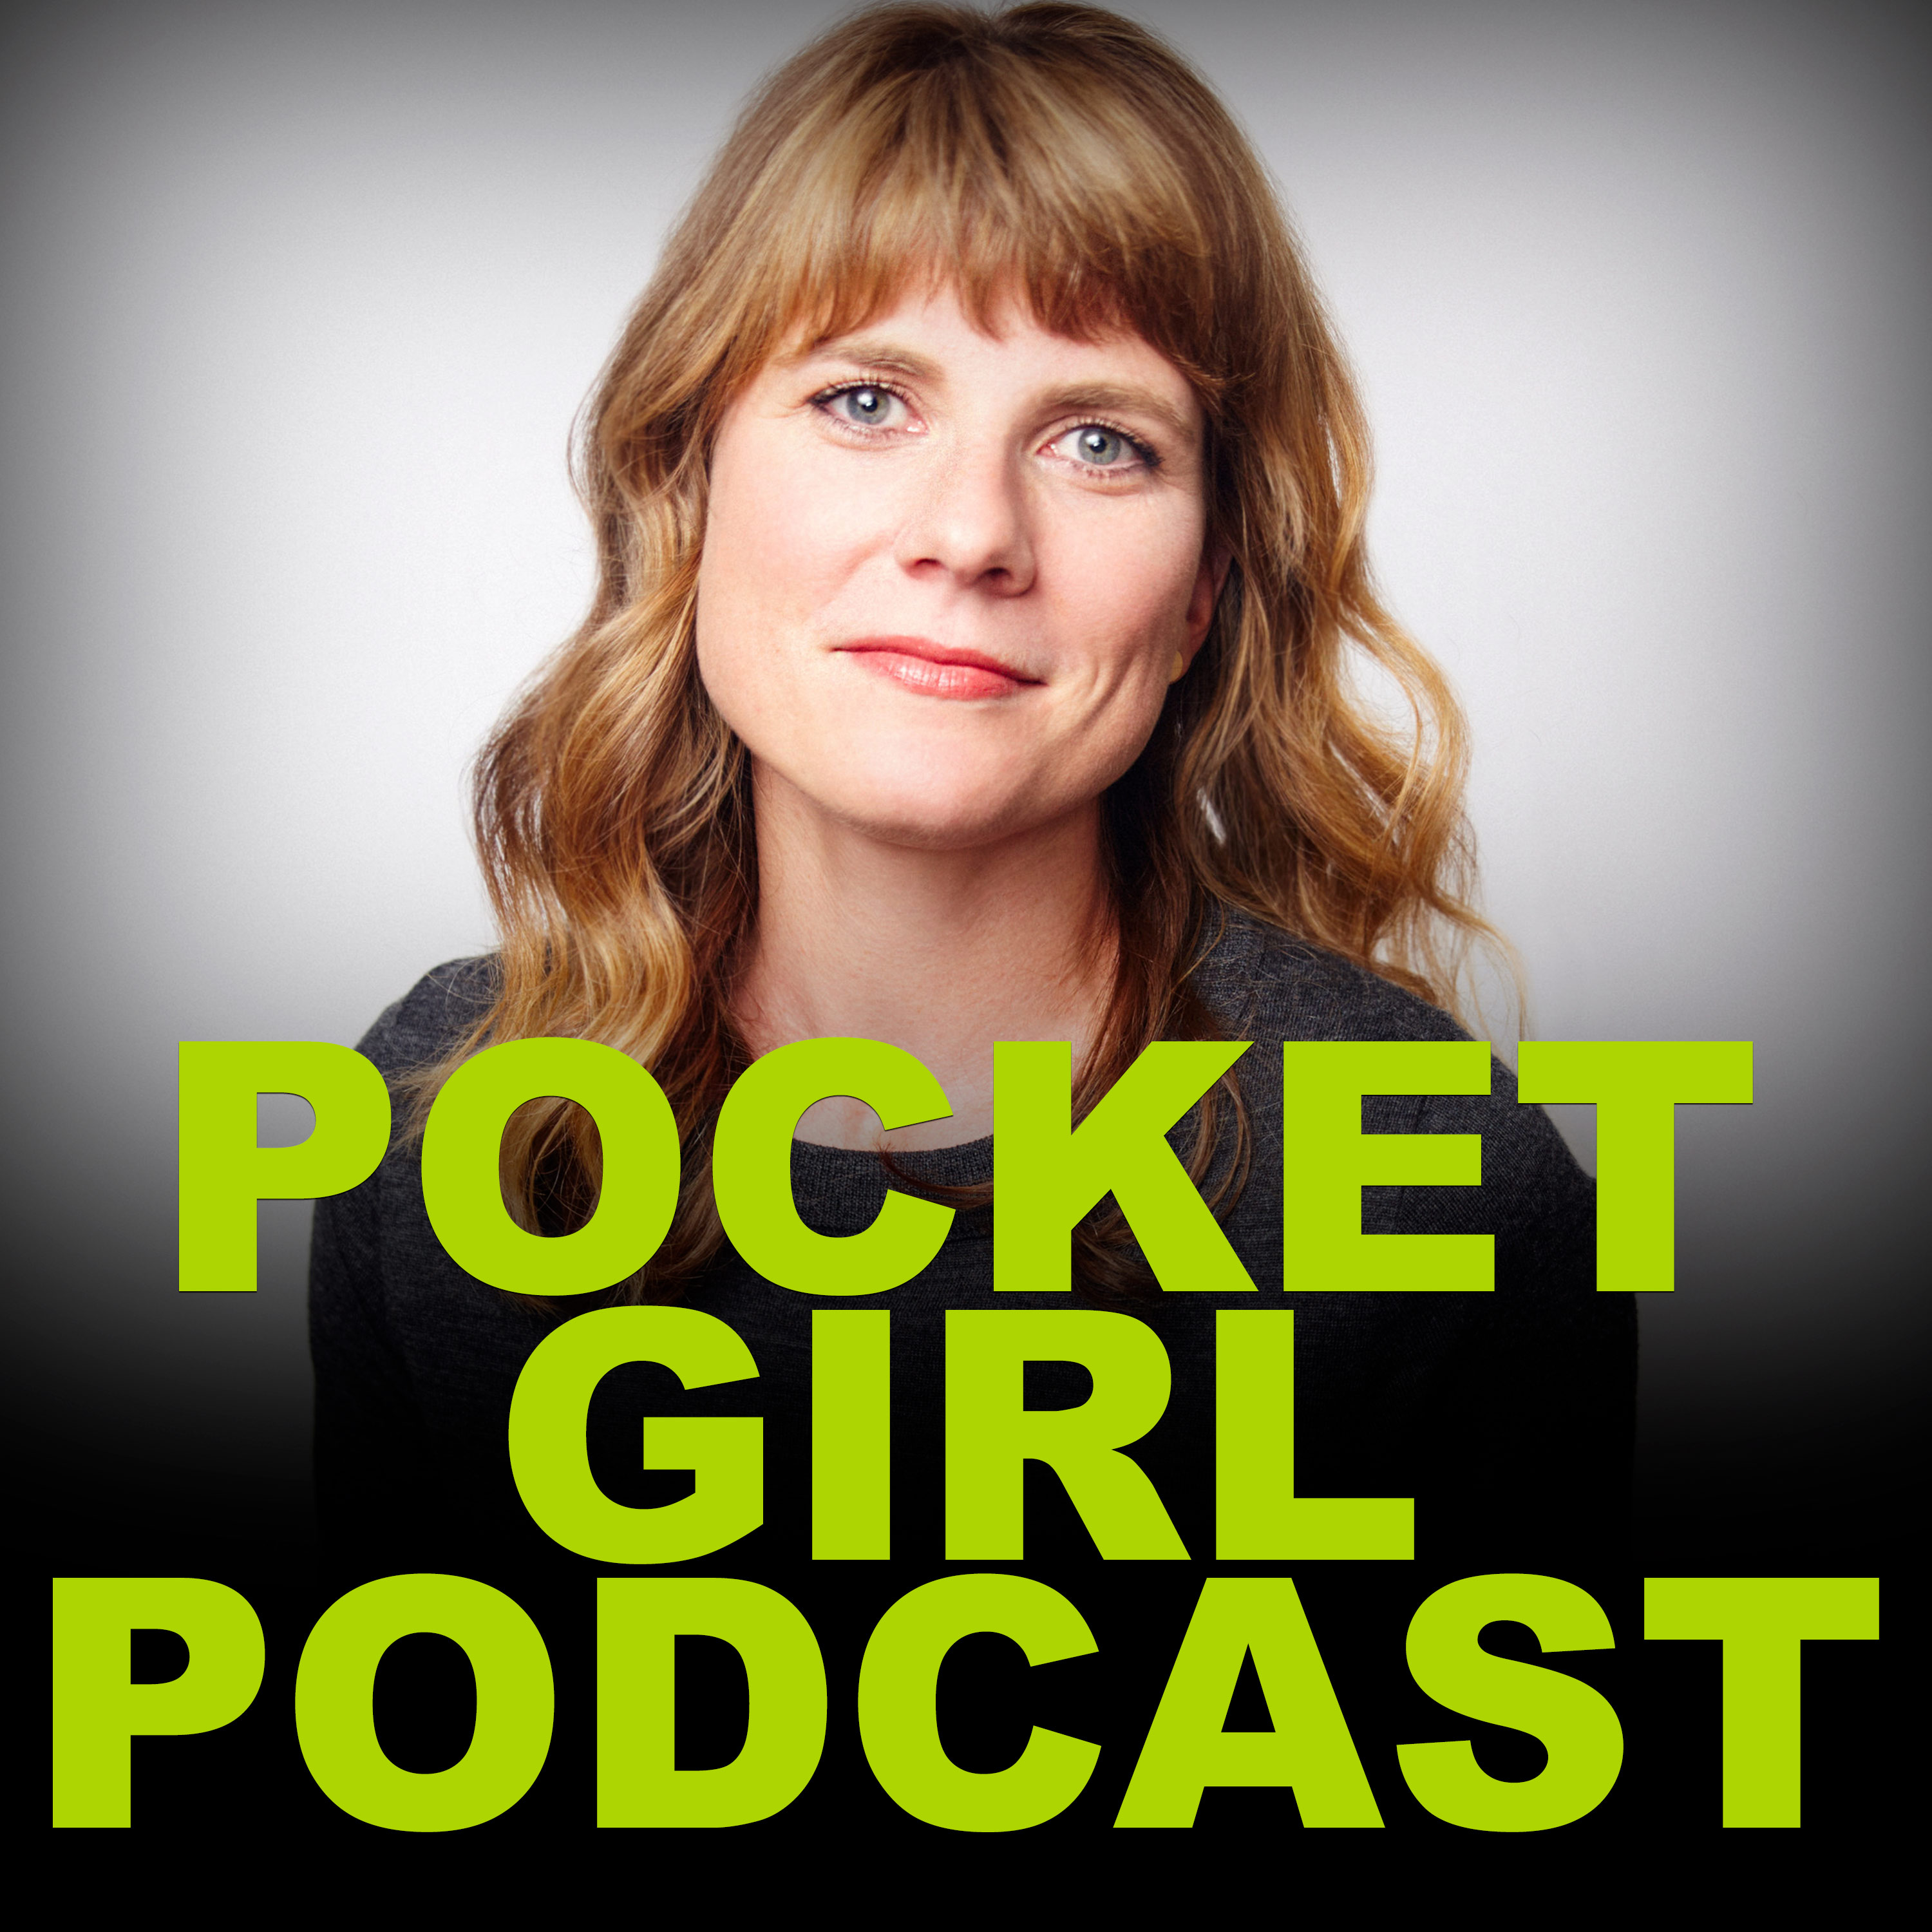 Pocket Girl Podcast